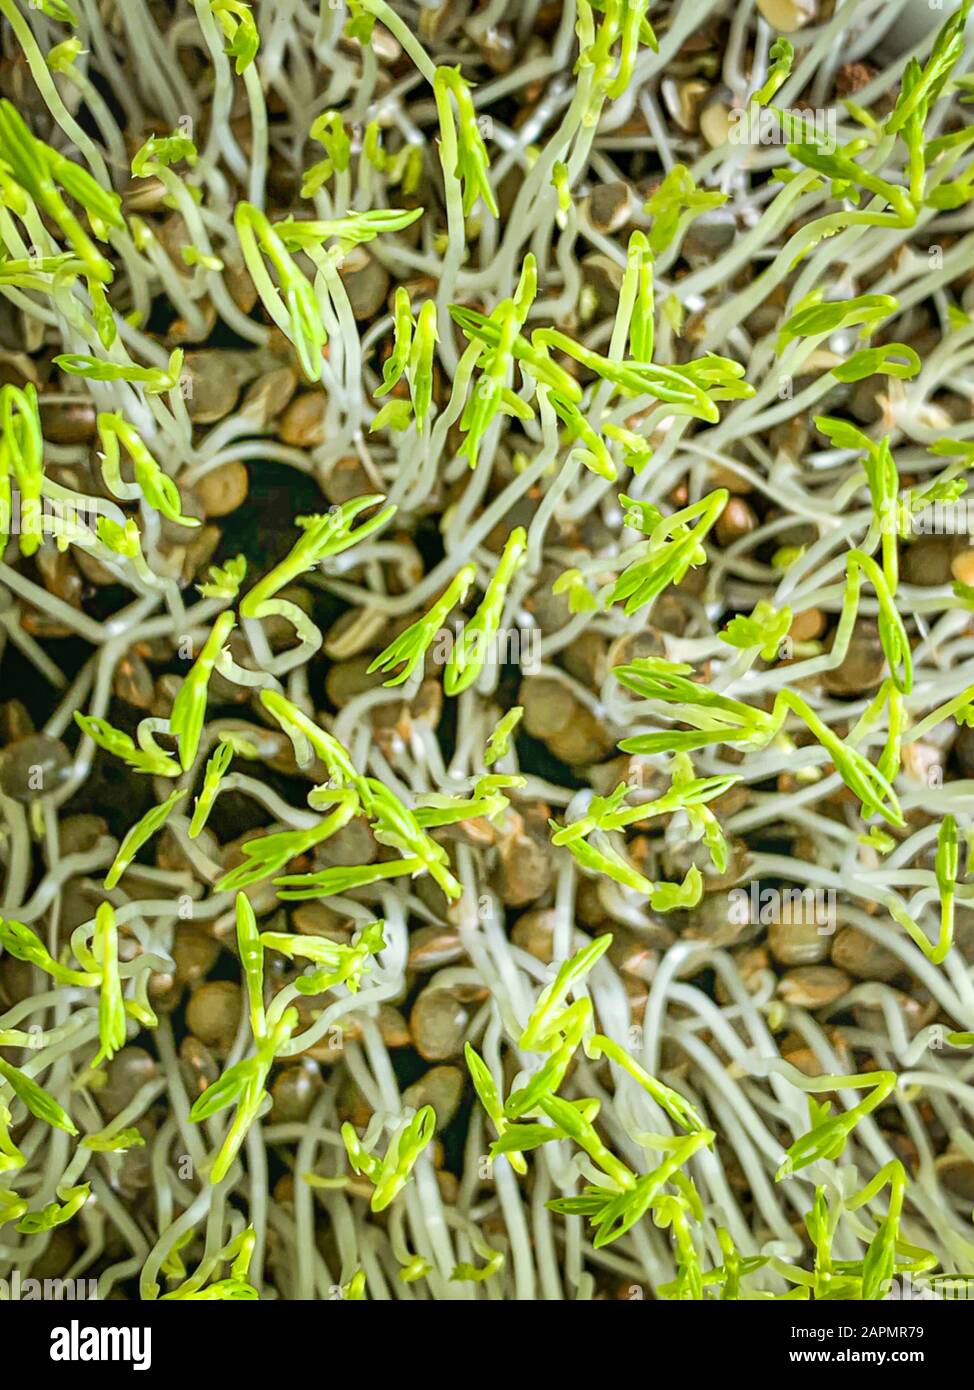 Grüne Linsensprosse von oben, Makrolebensmittelfoto. Sprießende französische Grünlocken, auch Puy-Linsen genannt. Grüne Sämlinge und junge Pflanzen. Stockfoto